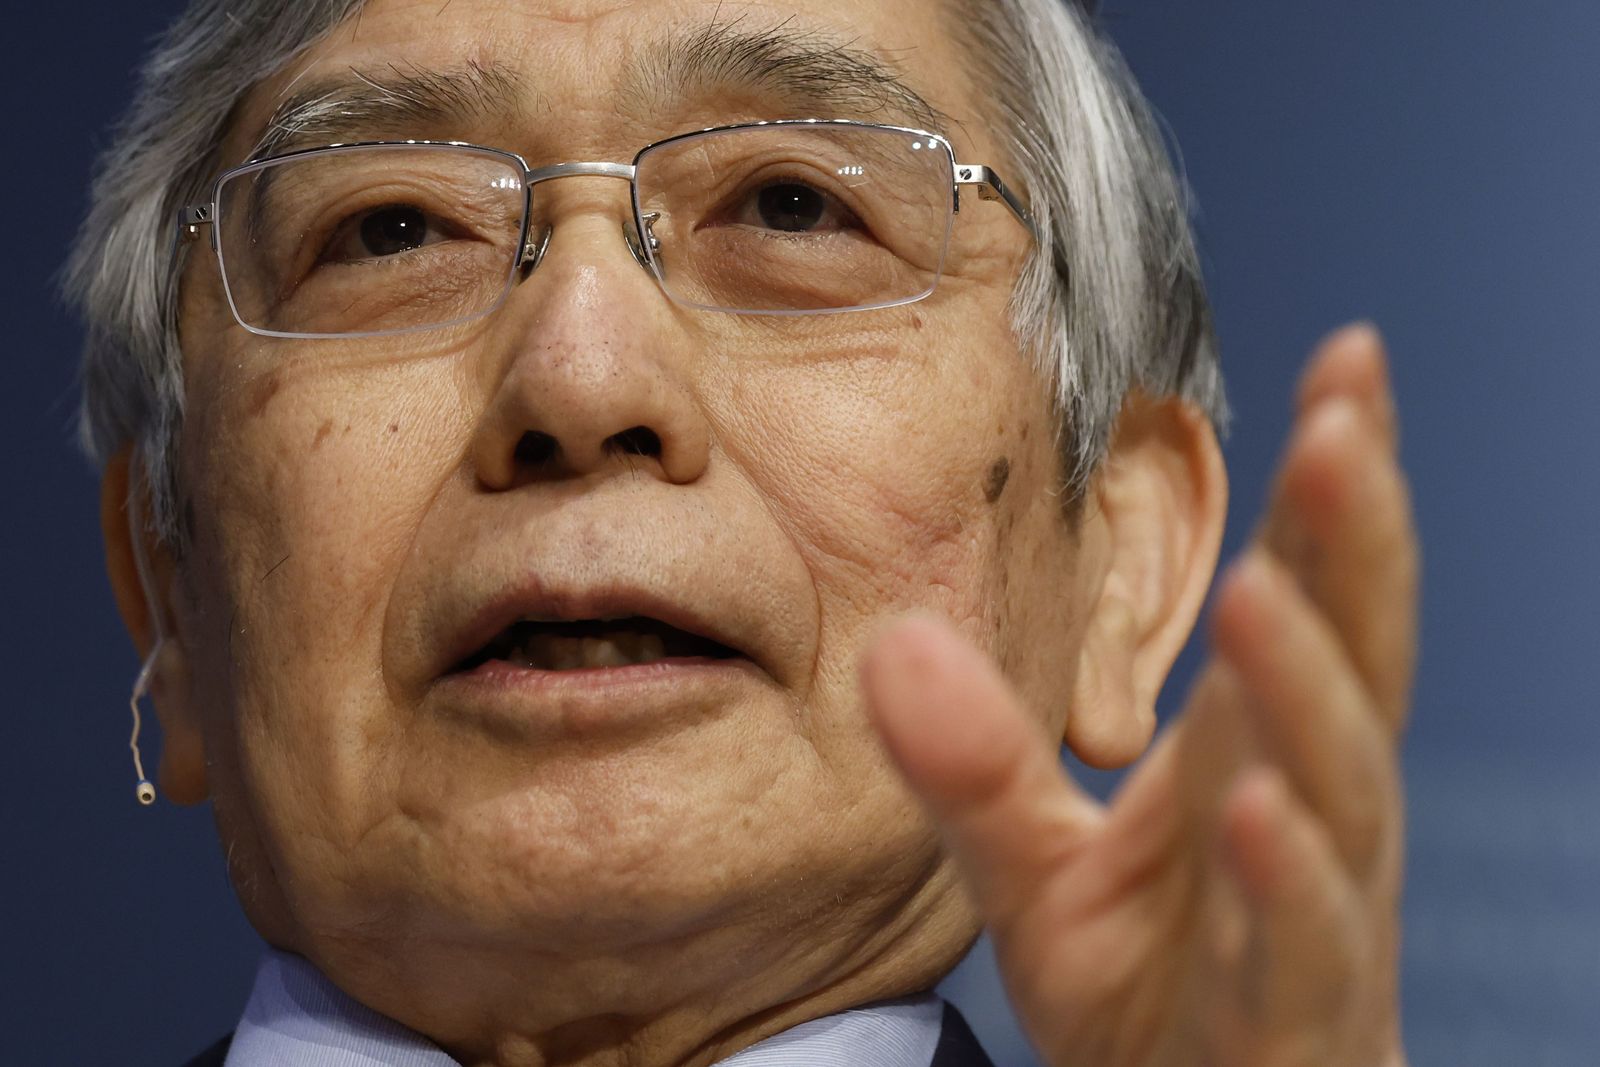 تغيير محافظ بنك اليابان.. كيف سيحدث ولماذا يُعدّ ذلك مهماً؟